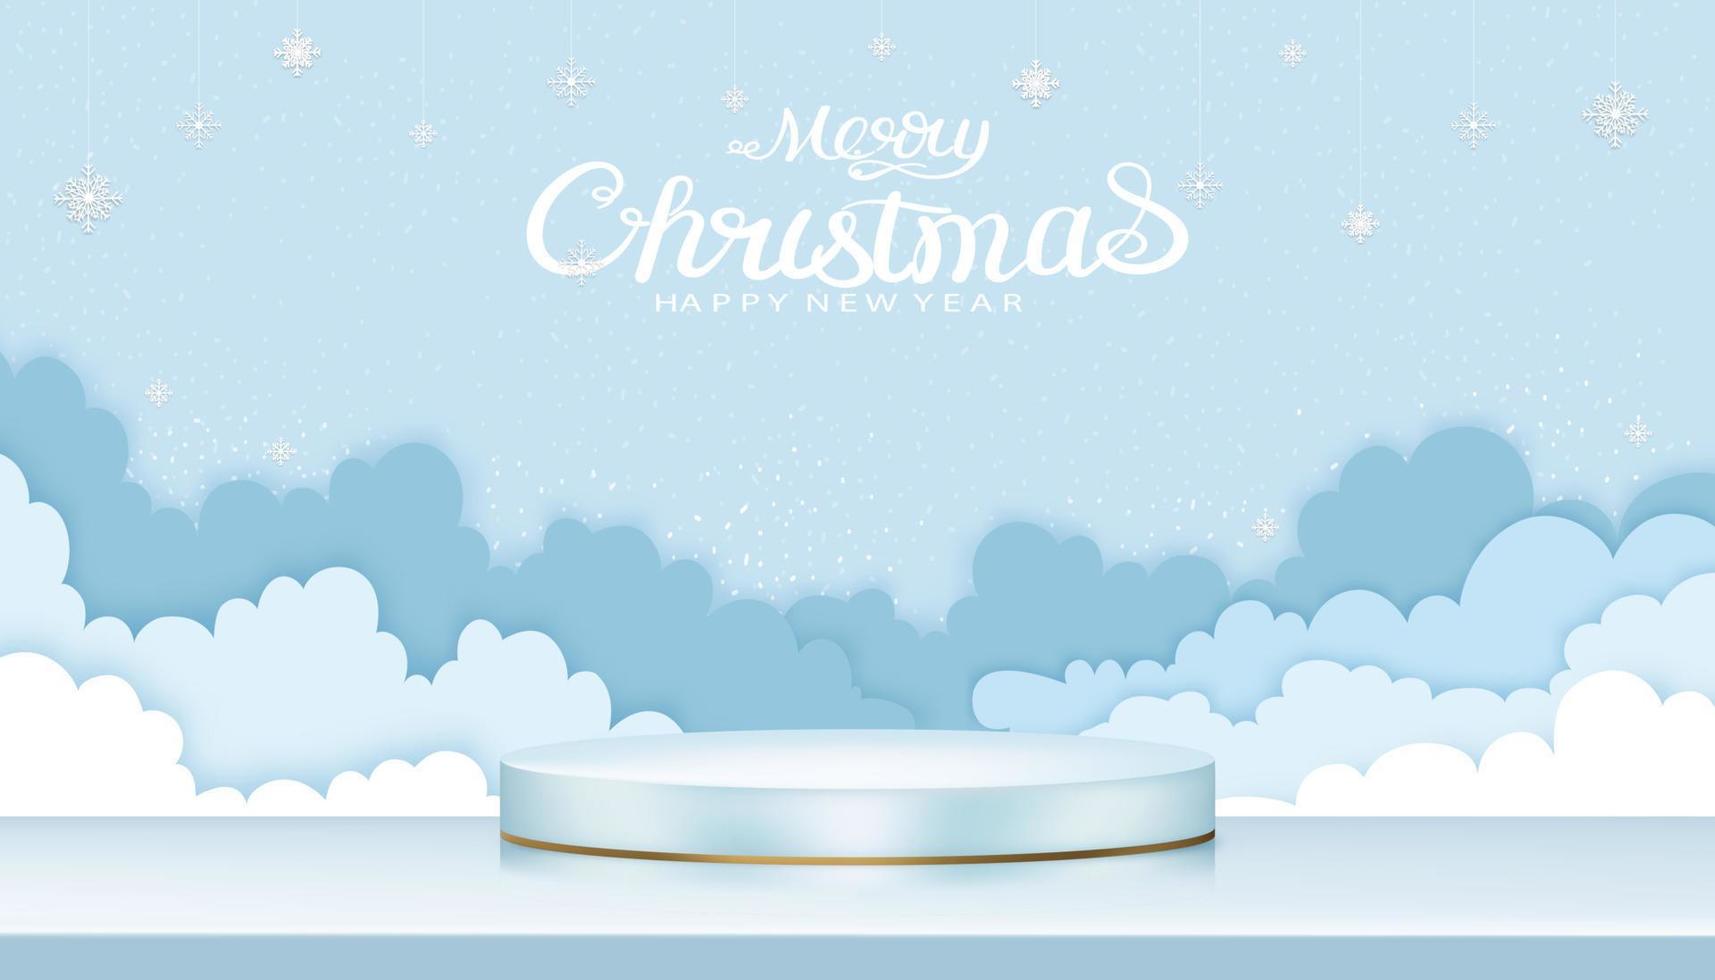 glad jul bakgrund med 3d visa cylinder form och papper skära clouds med snöflingor dekoration på blå himmel, vektor illustration för jul eller ny år baner eller hälsning kort